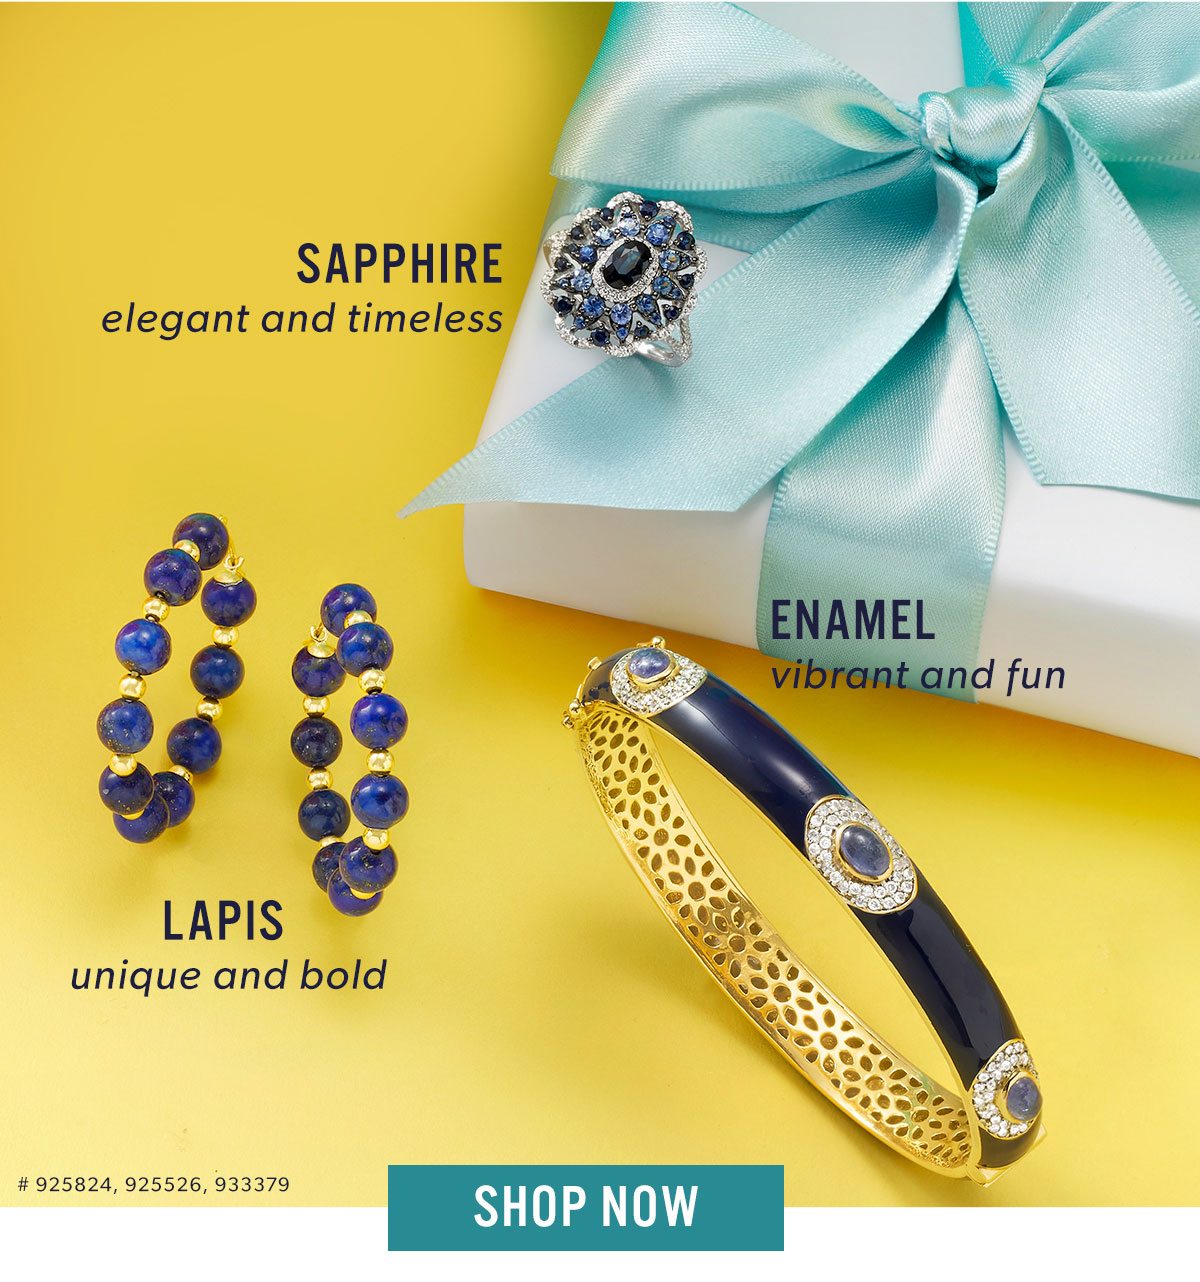 Sapphire, Enamel and Lapis. Shop Now